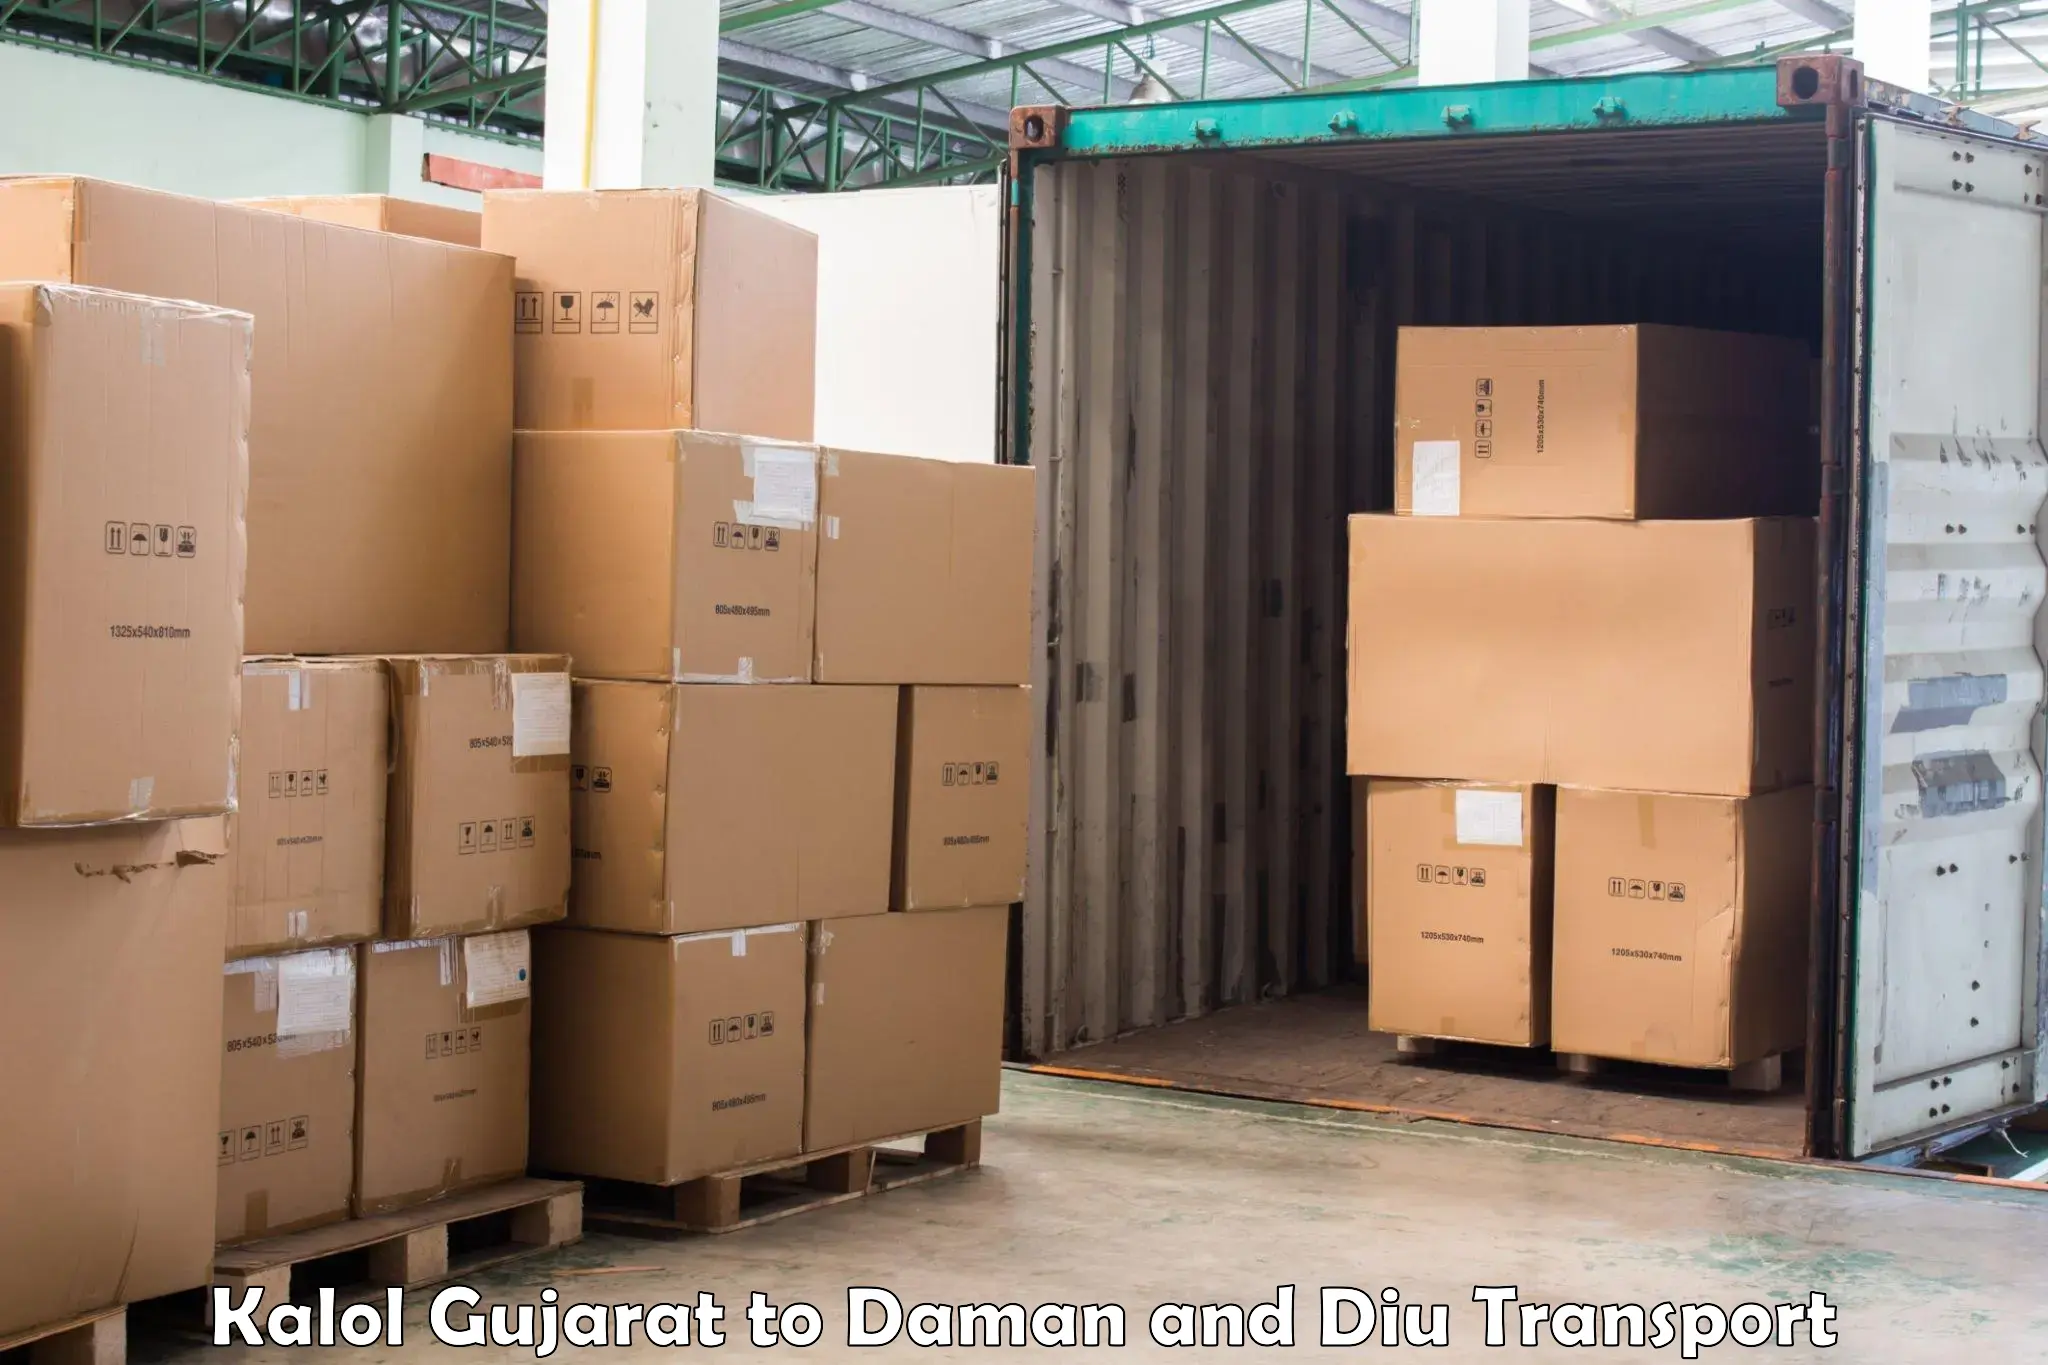 Air cargo transport services Kalol Gujarat to Daman and Diu